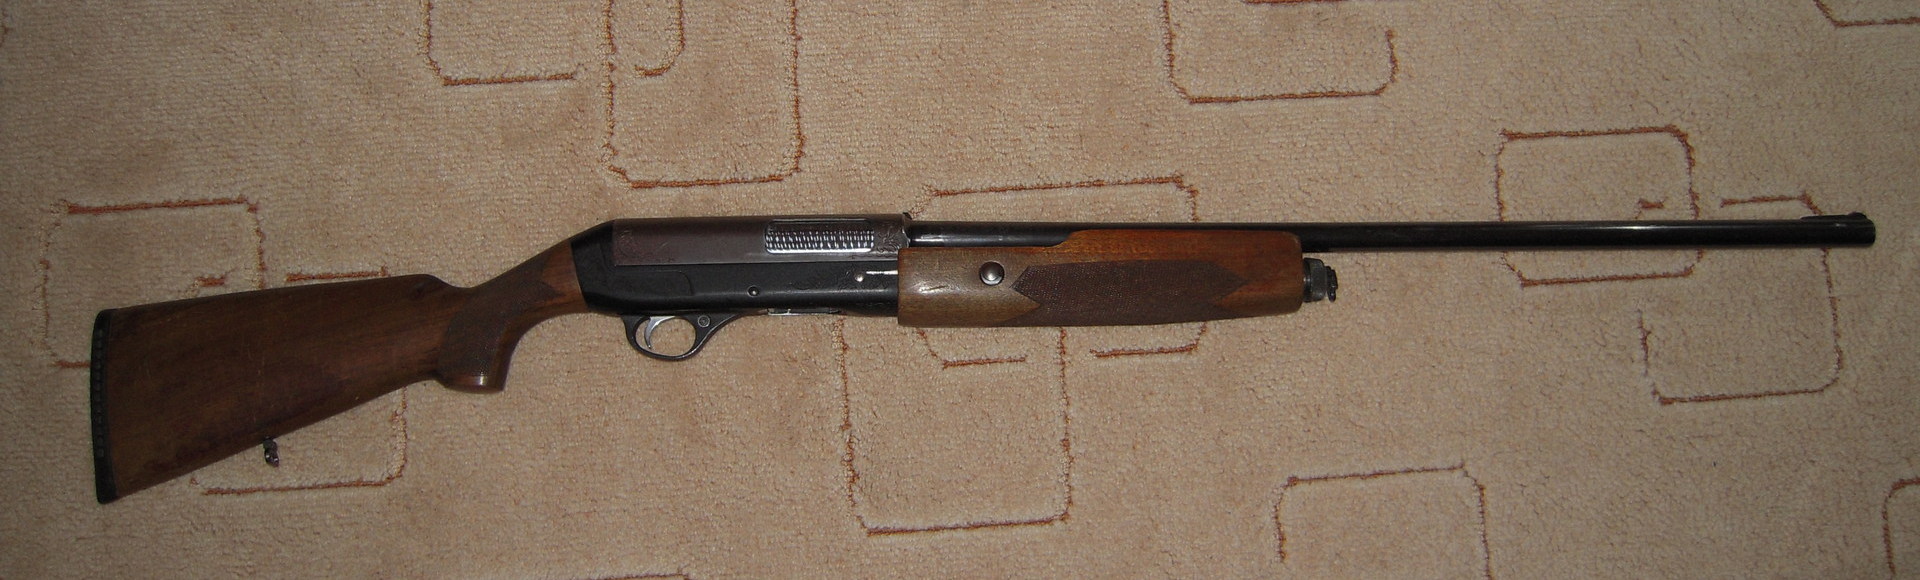 Ружье тоз-87: отличное самозарядное охотничье ружьё